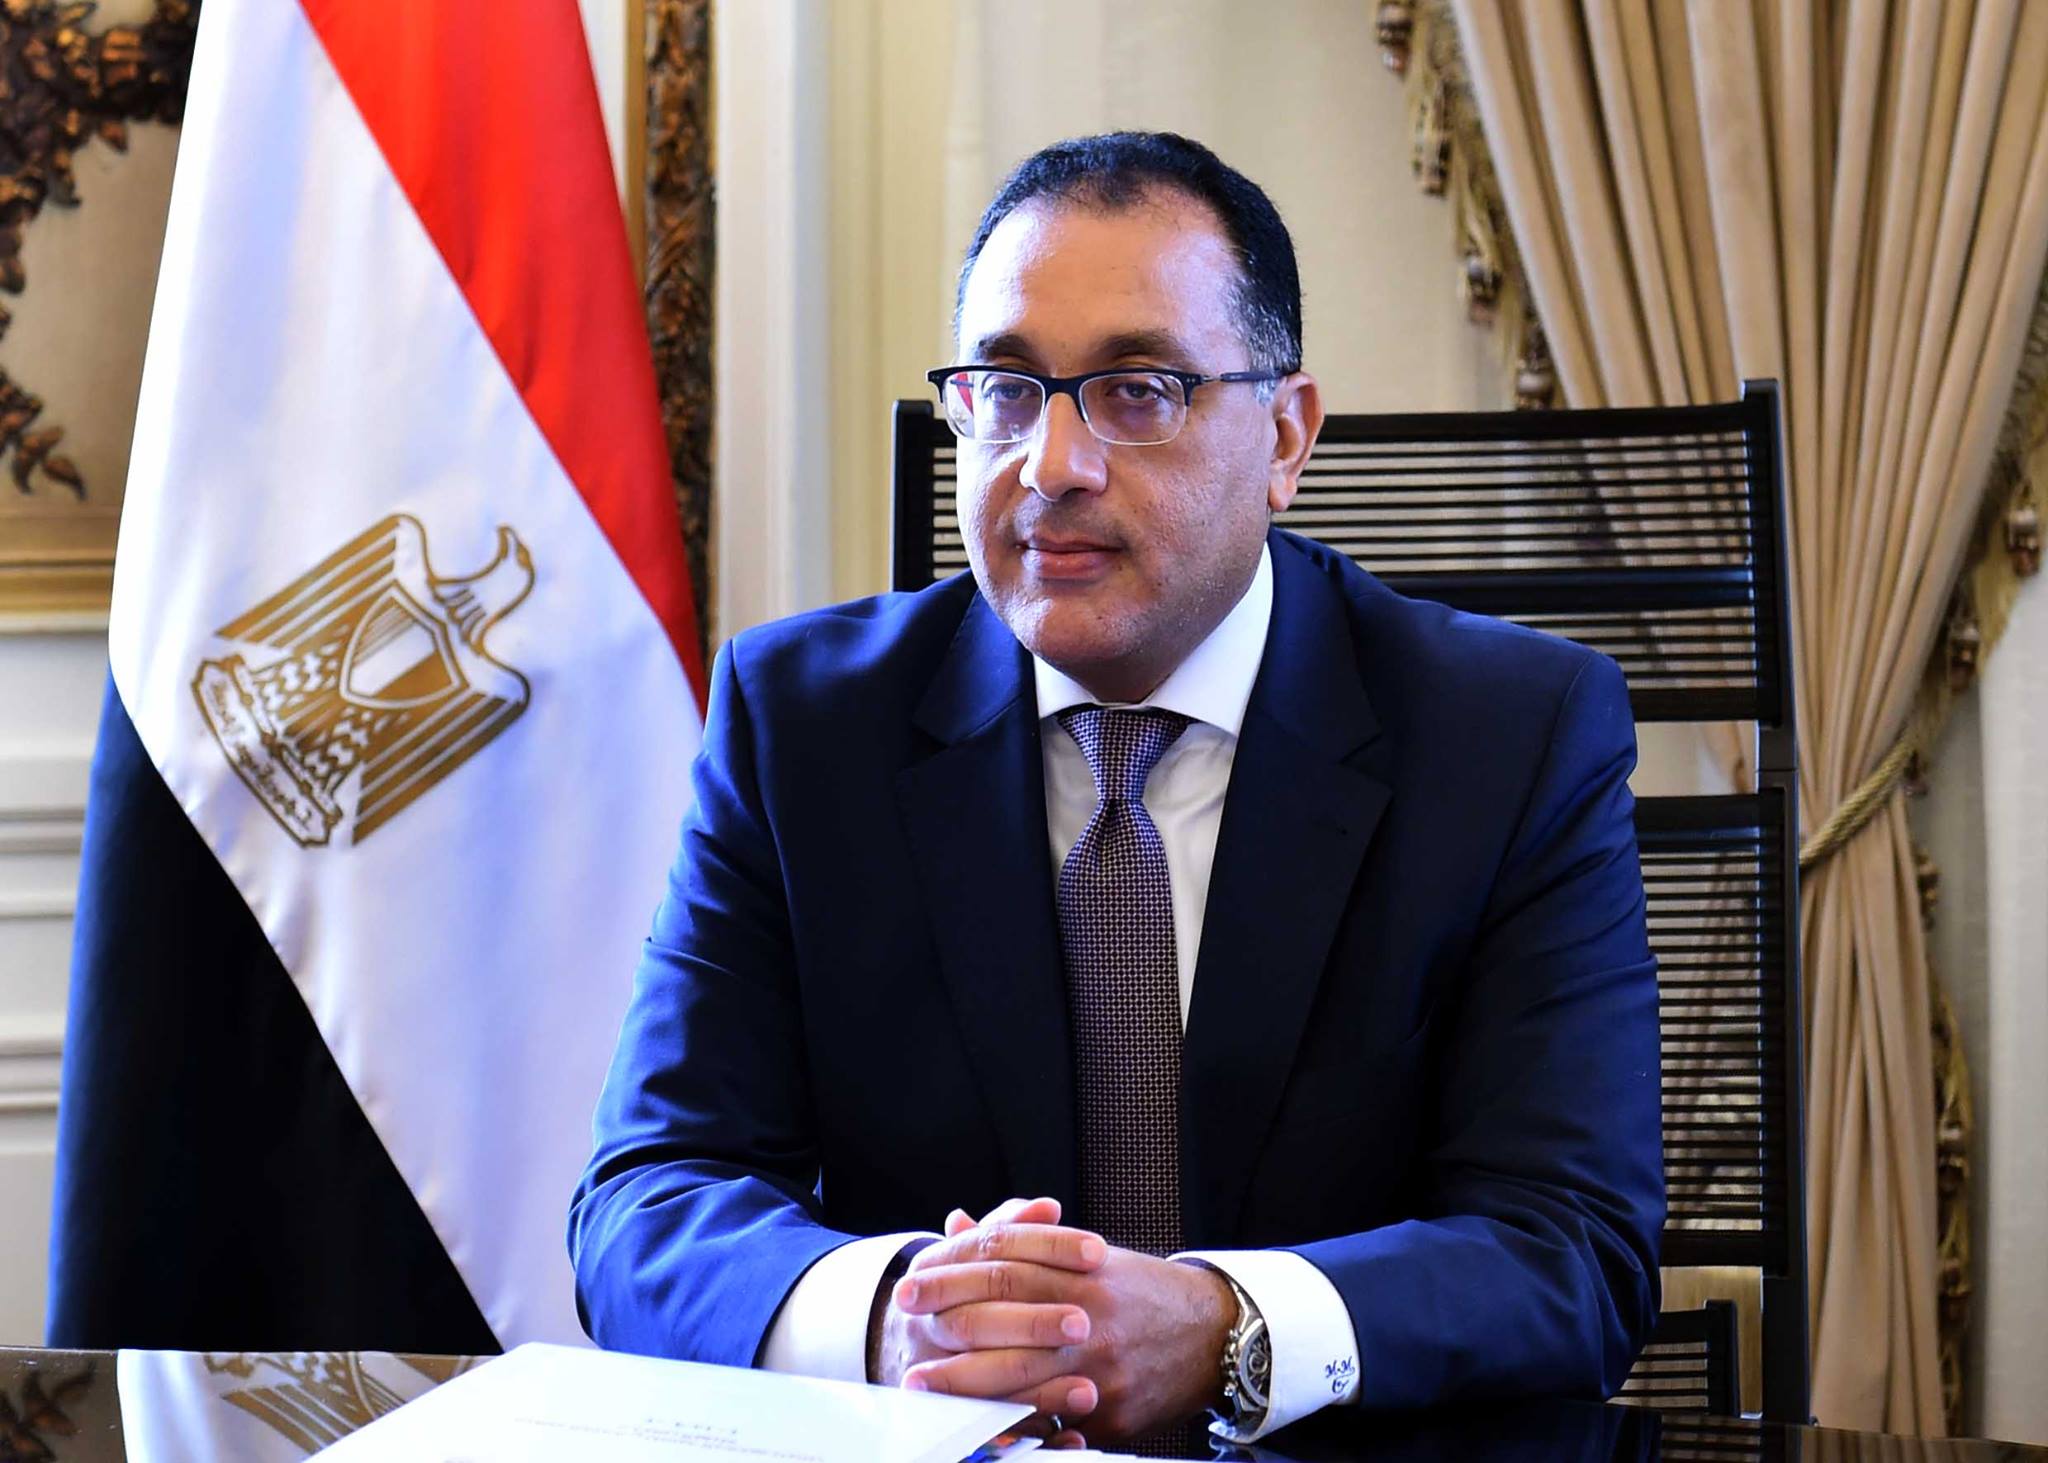  عاجل: مصر تسقط الجنسية عن 6 أشخاص.